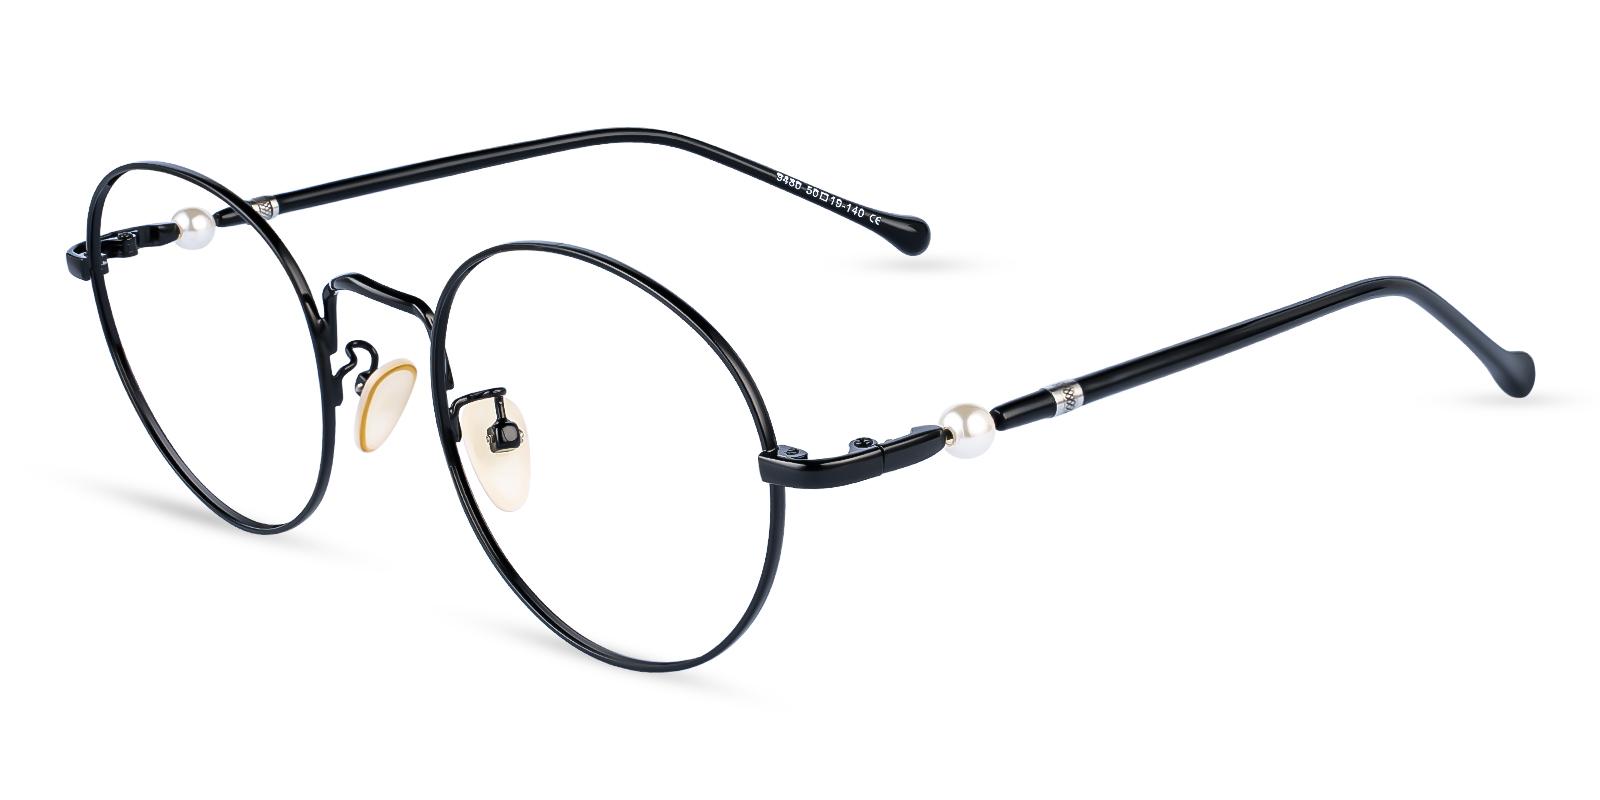 Durns Black Metal Eyeglasses , NosePads Frames from ABBE Glasses